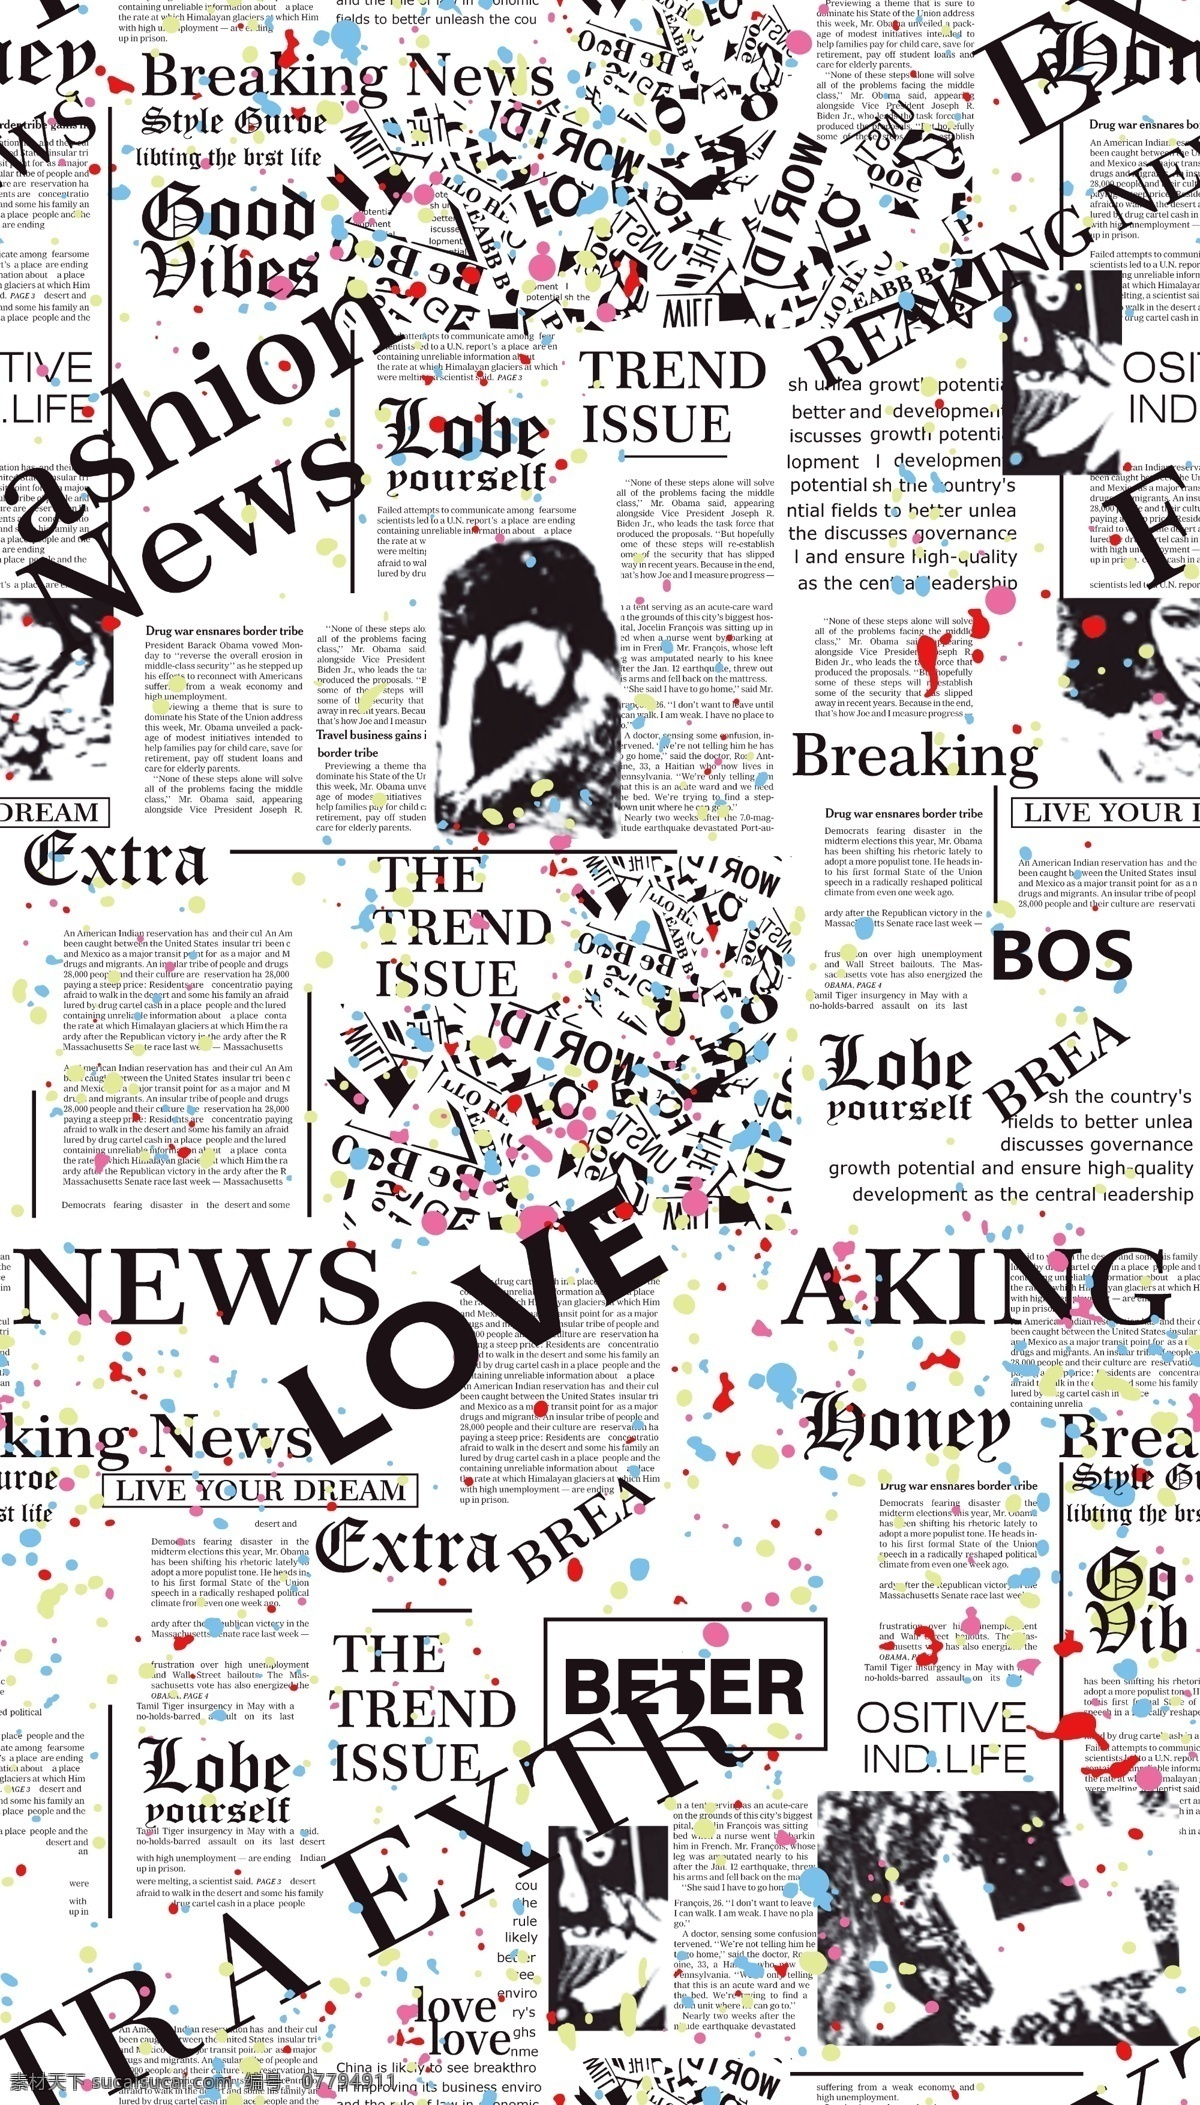 报纸图片 报纸 英文字母 大牌 手绘图 矢量图 文化艺术 传统文化